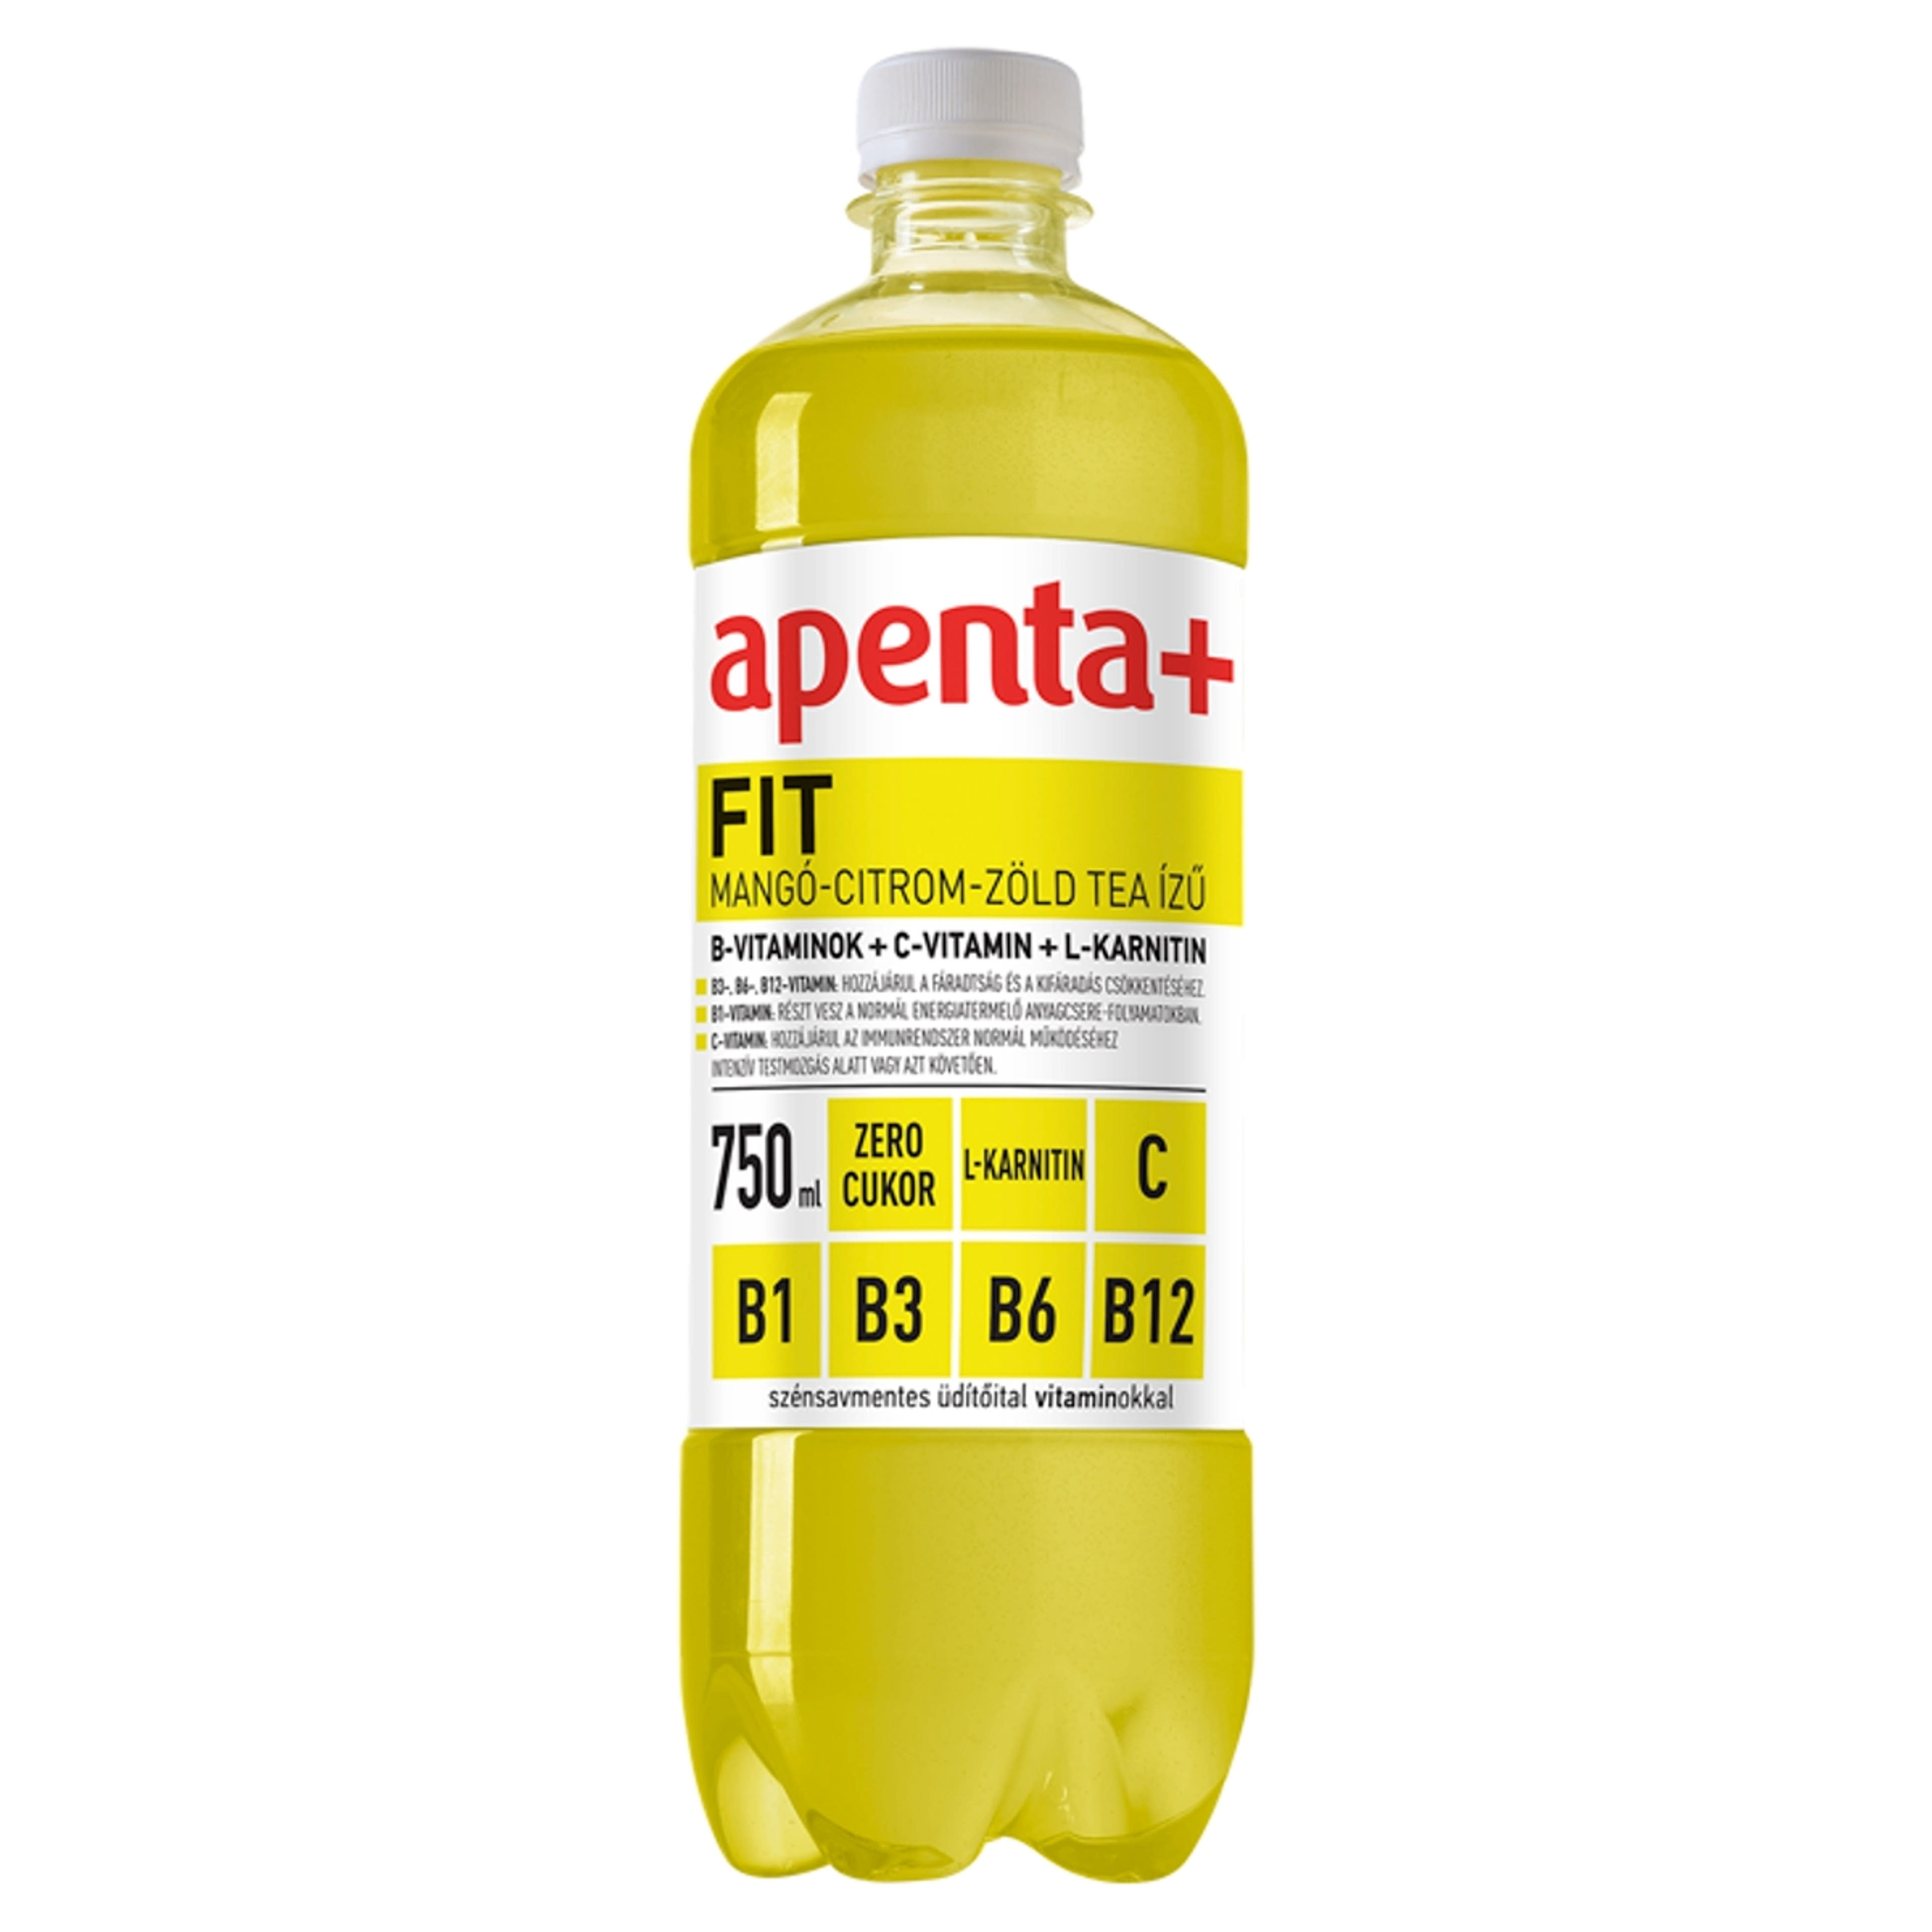 Apenta + fit - 750 ml